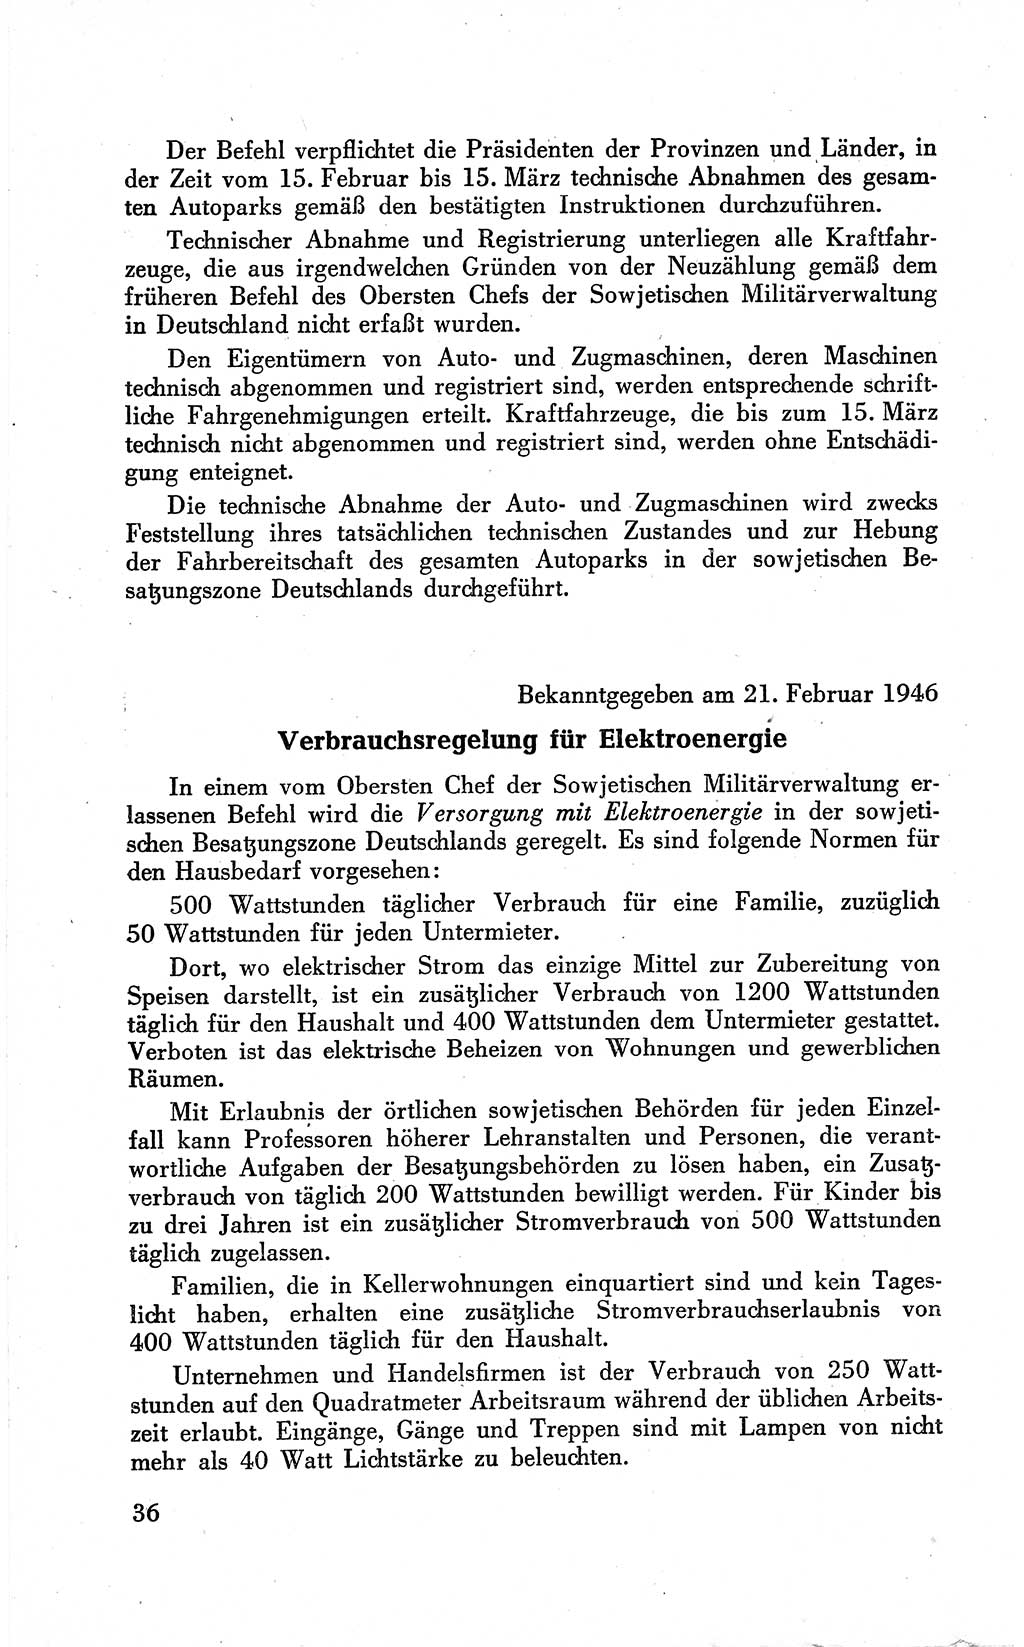 Befehle des Obersten Chefs der Sowjetischen Miltärverwaltung (SMV) in Deutschland - Aus dem Stab der Sowjetischen Militärverwaltung in Deutschland 1946 (Bef. SMV Dtl. 1946, S. 36)